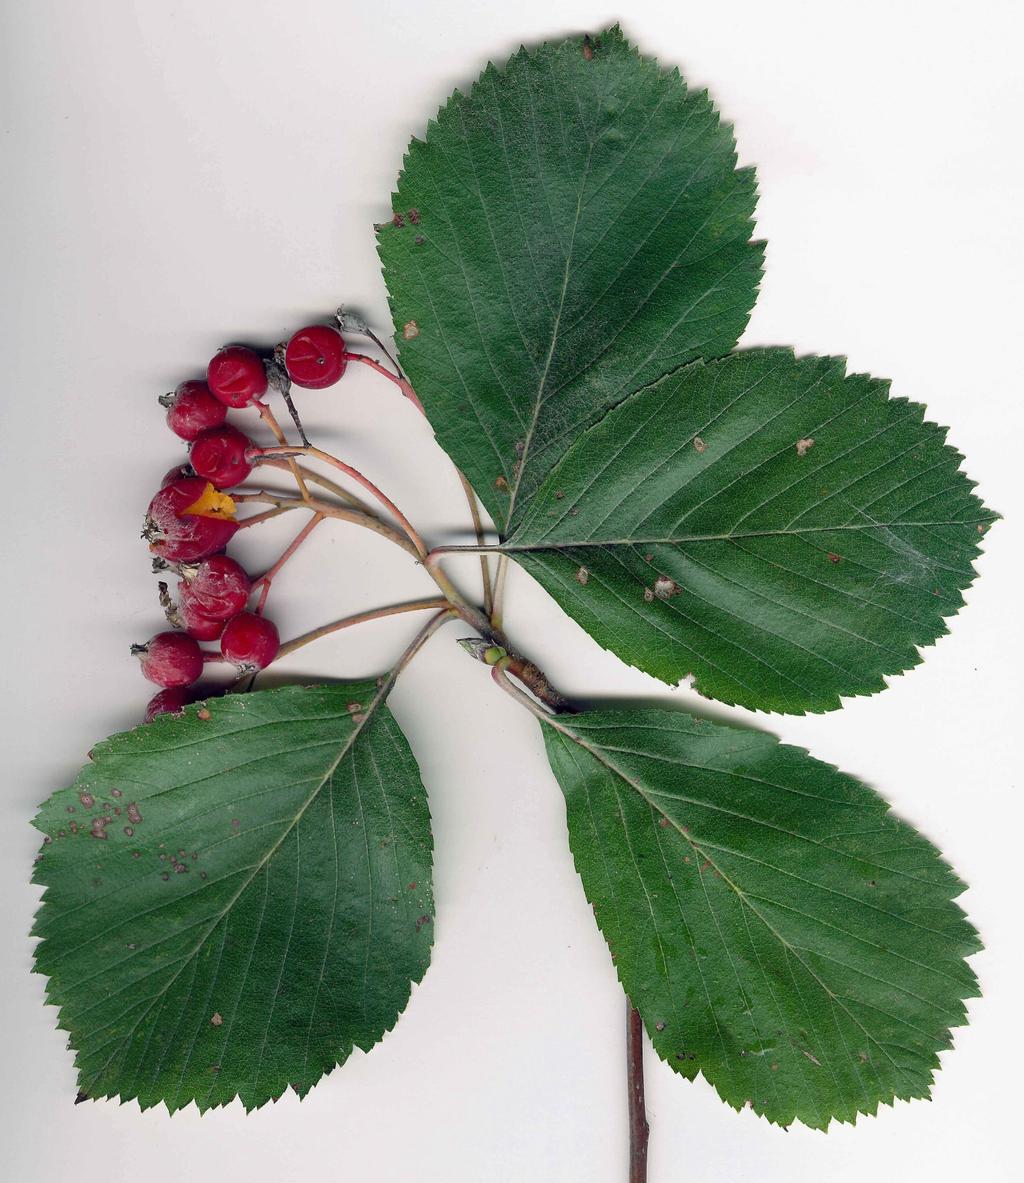 S. pannonica Hahnenkamm Blätter leicht gelappt, zugespitzt: